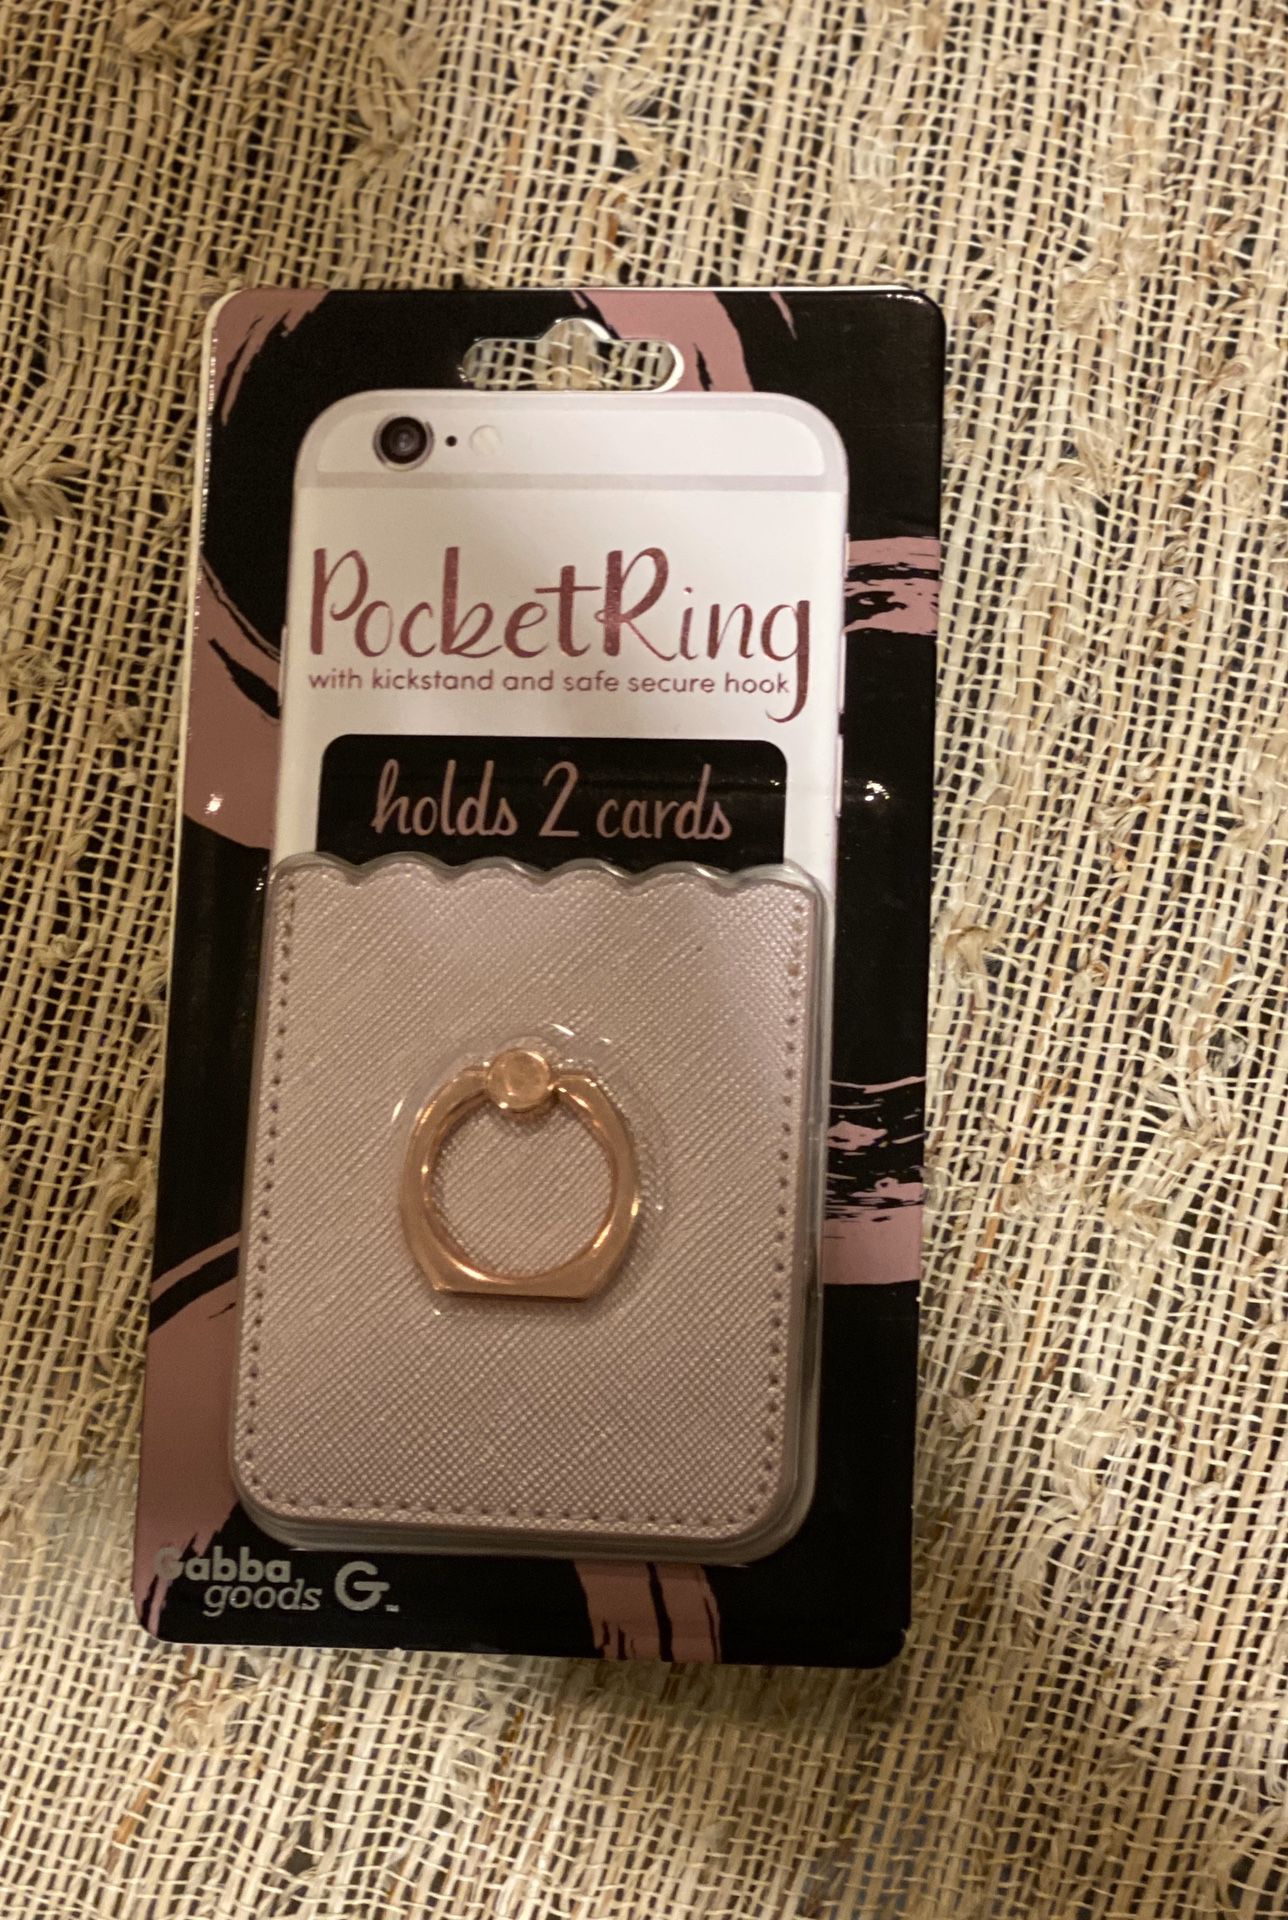 Pocket ring